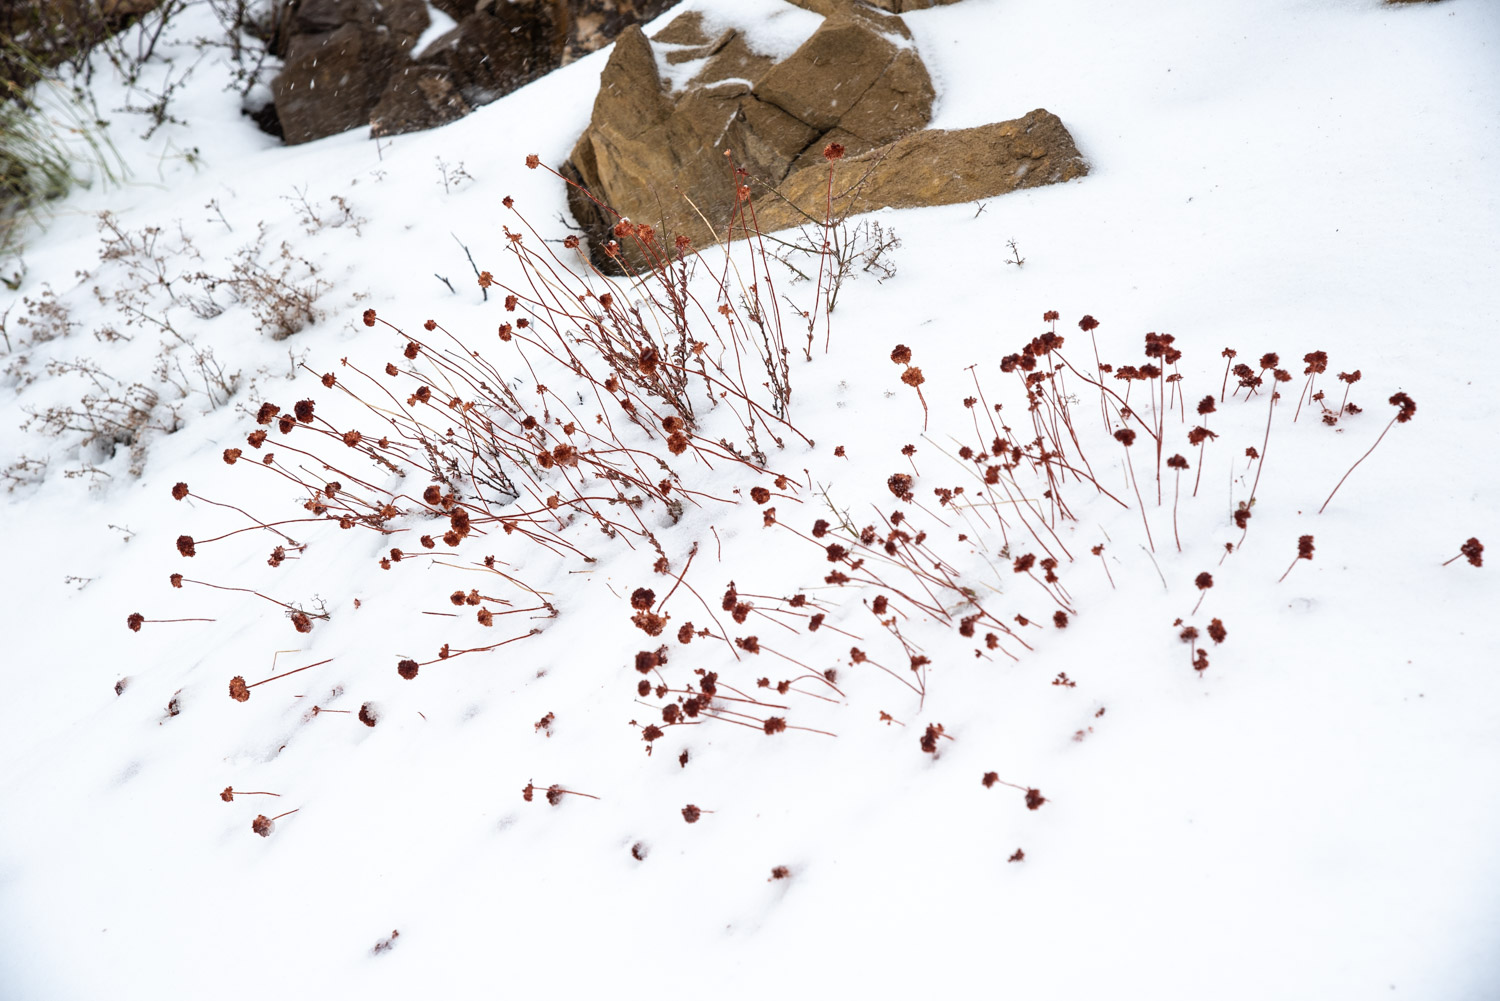 California Buckwheat (Eriogonum fasciculatum) in the Snow